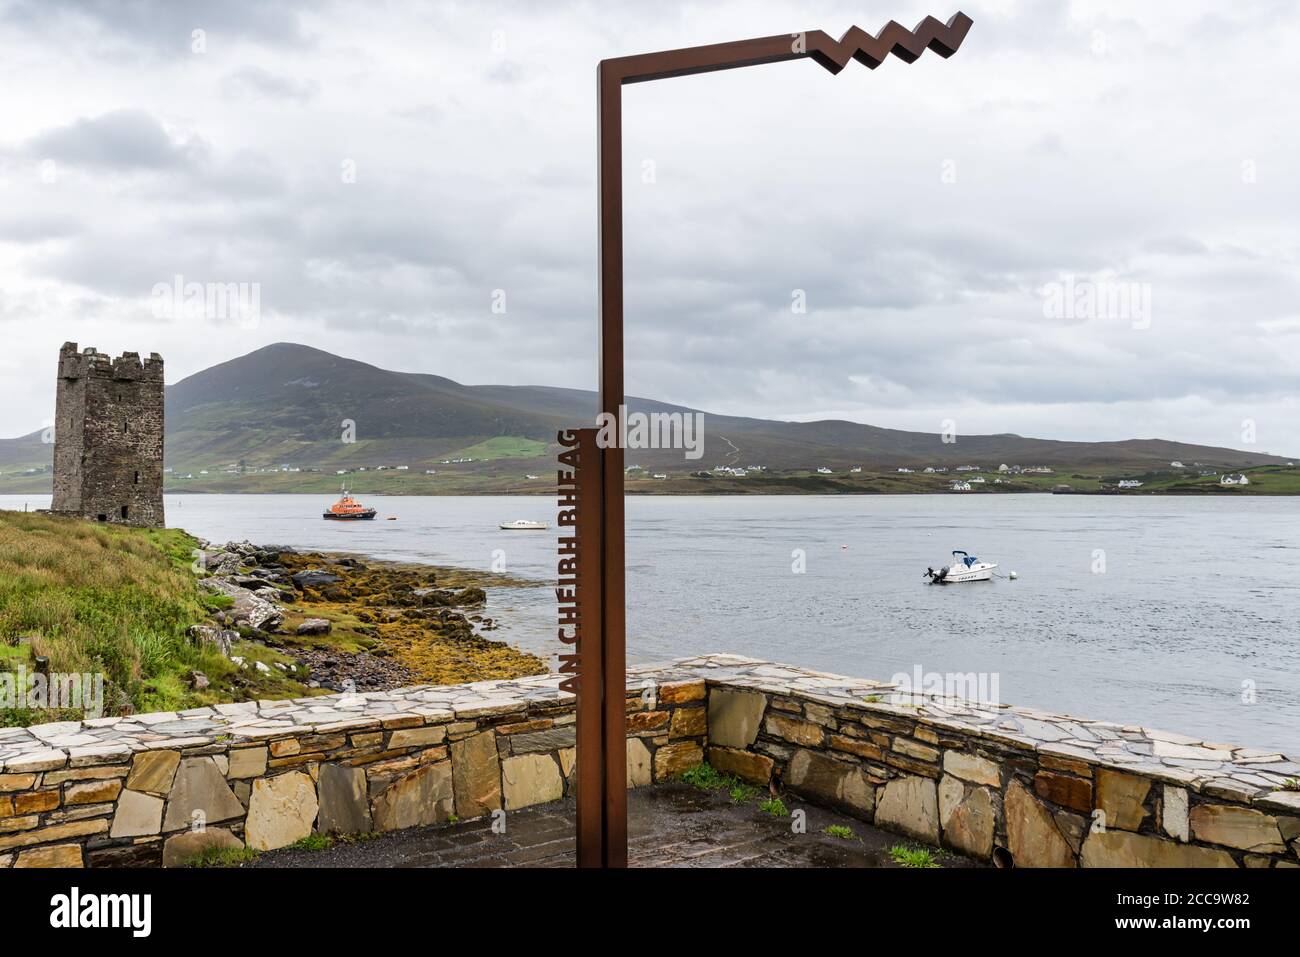 Achill, Irlande - 30 juillet 2020 : un point de vue de la voie de l'Atlantique sauvage Cheibh Bheag près du château de Kildavnet sur le comté d'Achill Island Mayo en Irlande Banque D'Images